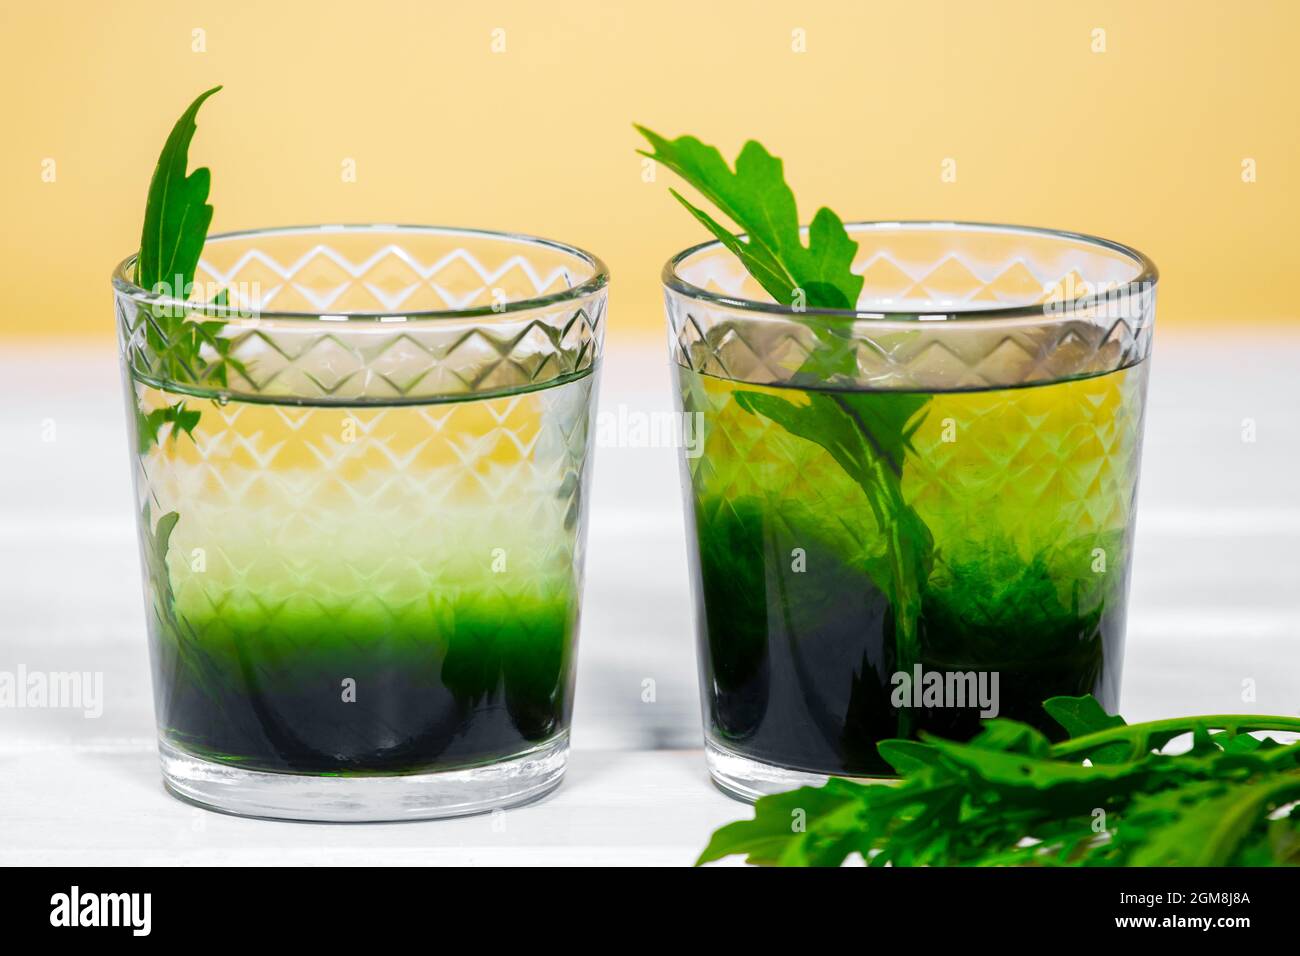 Grünes Chlorophyll oder Chlorella Getränk im Glas mit Wasser auf weißem Tisch, oranger Hintergrund. Grüne Tropfen in klarem Wasser, Antioxidantien, Speisen und Getränke. Stockfoto